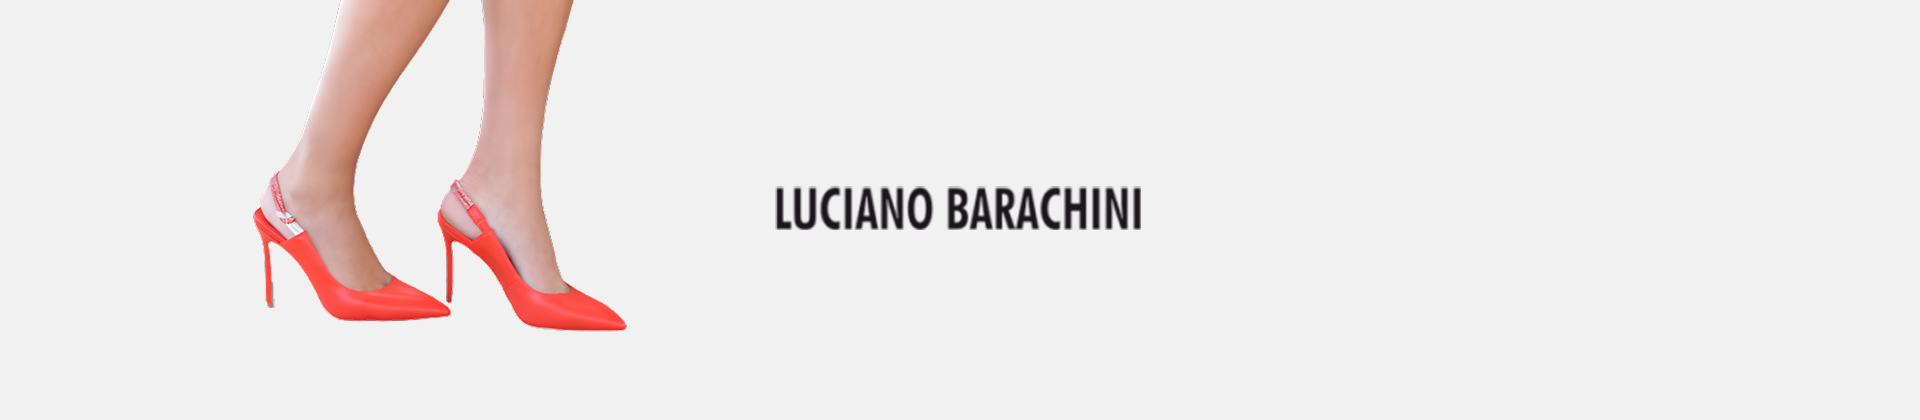 Luciano Barachini Scarpe Donna Online